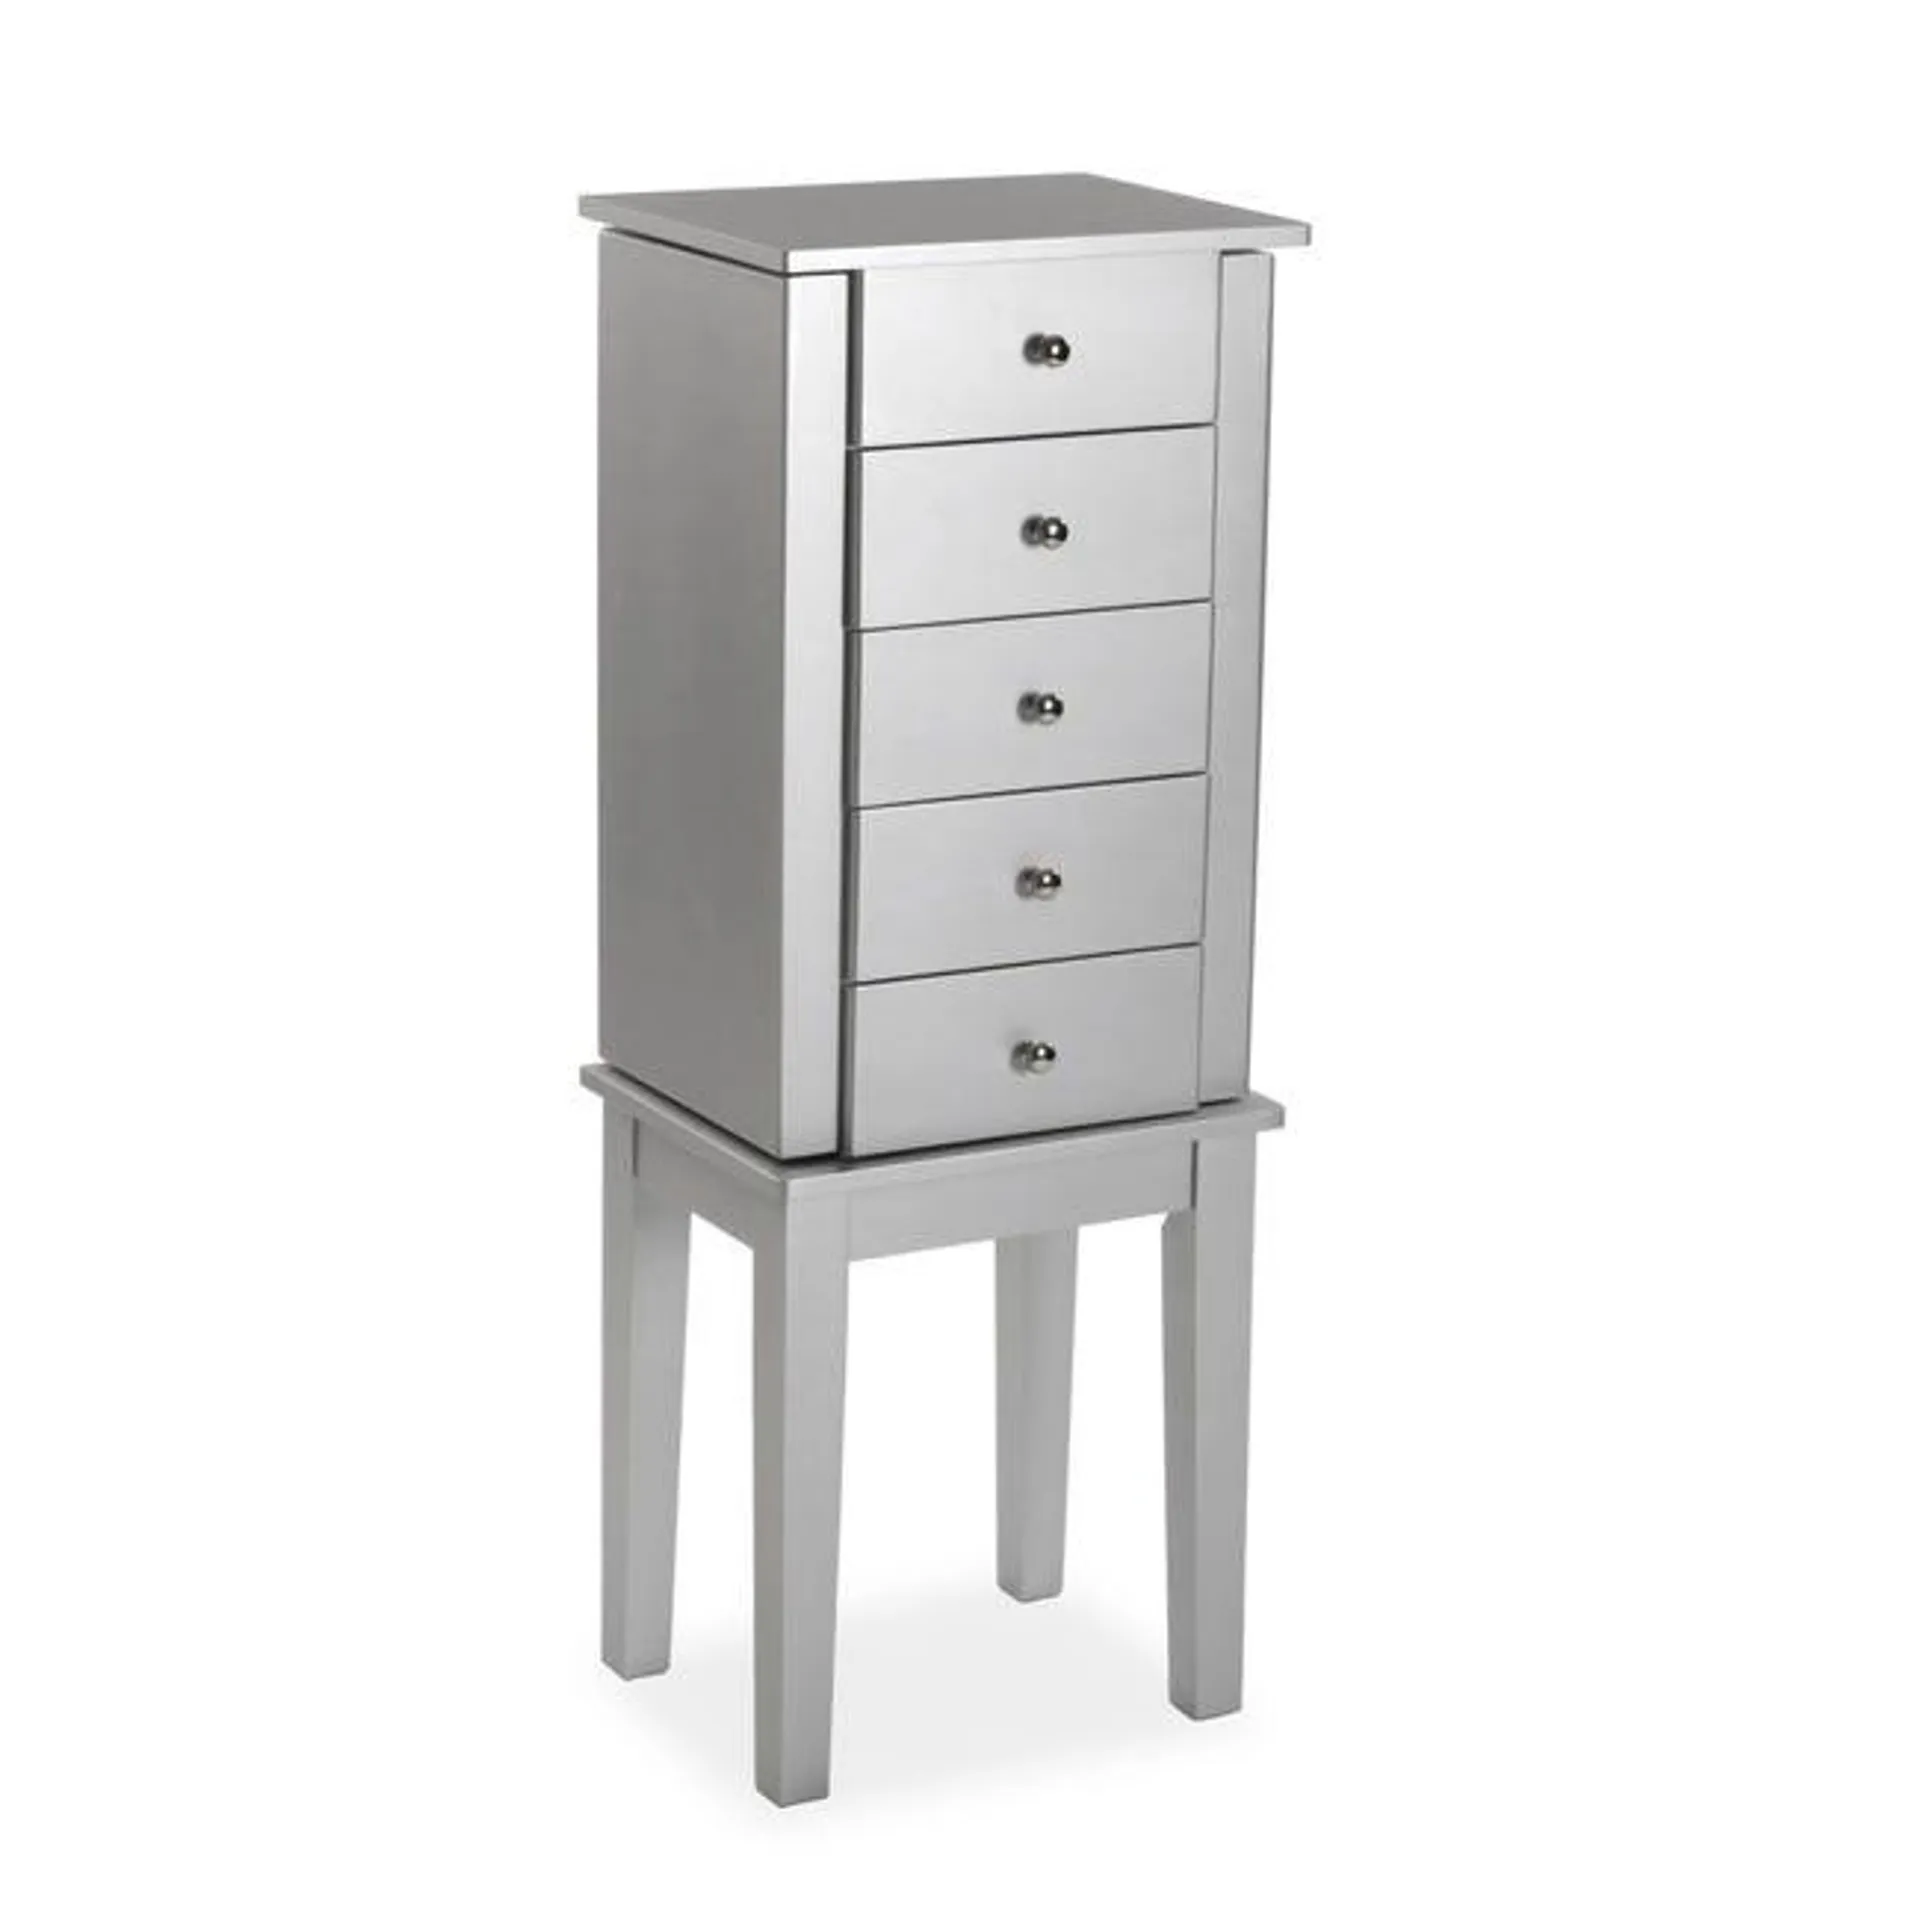 Mueble joyero Meissa con 5 cajones en color gris 91.4x34.2x26.2cm Ver detalles del producto